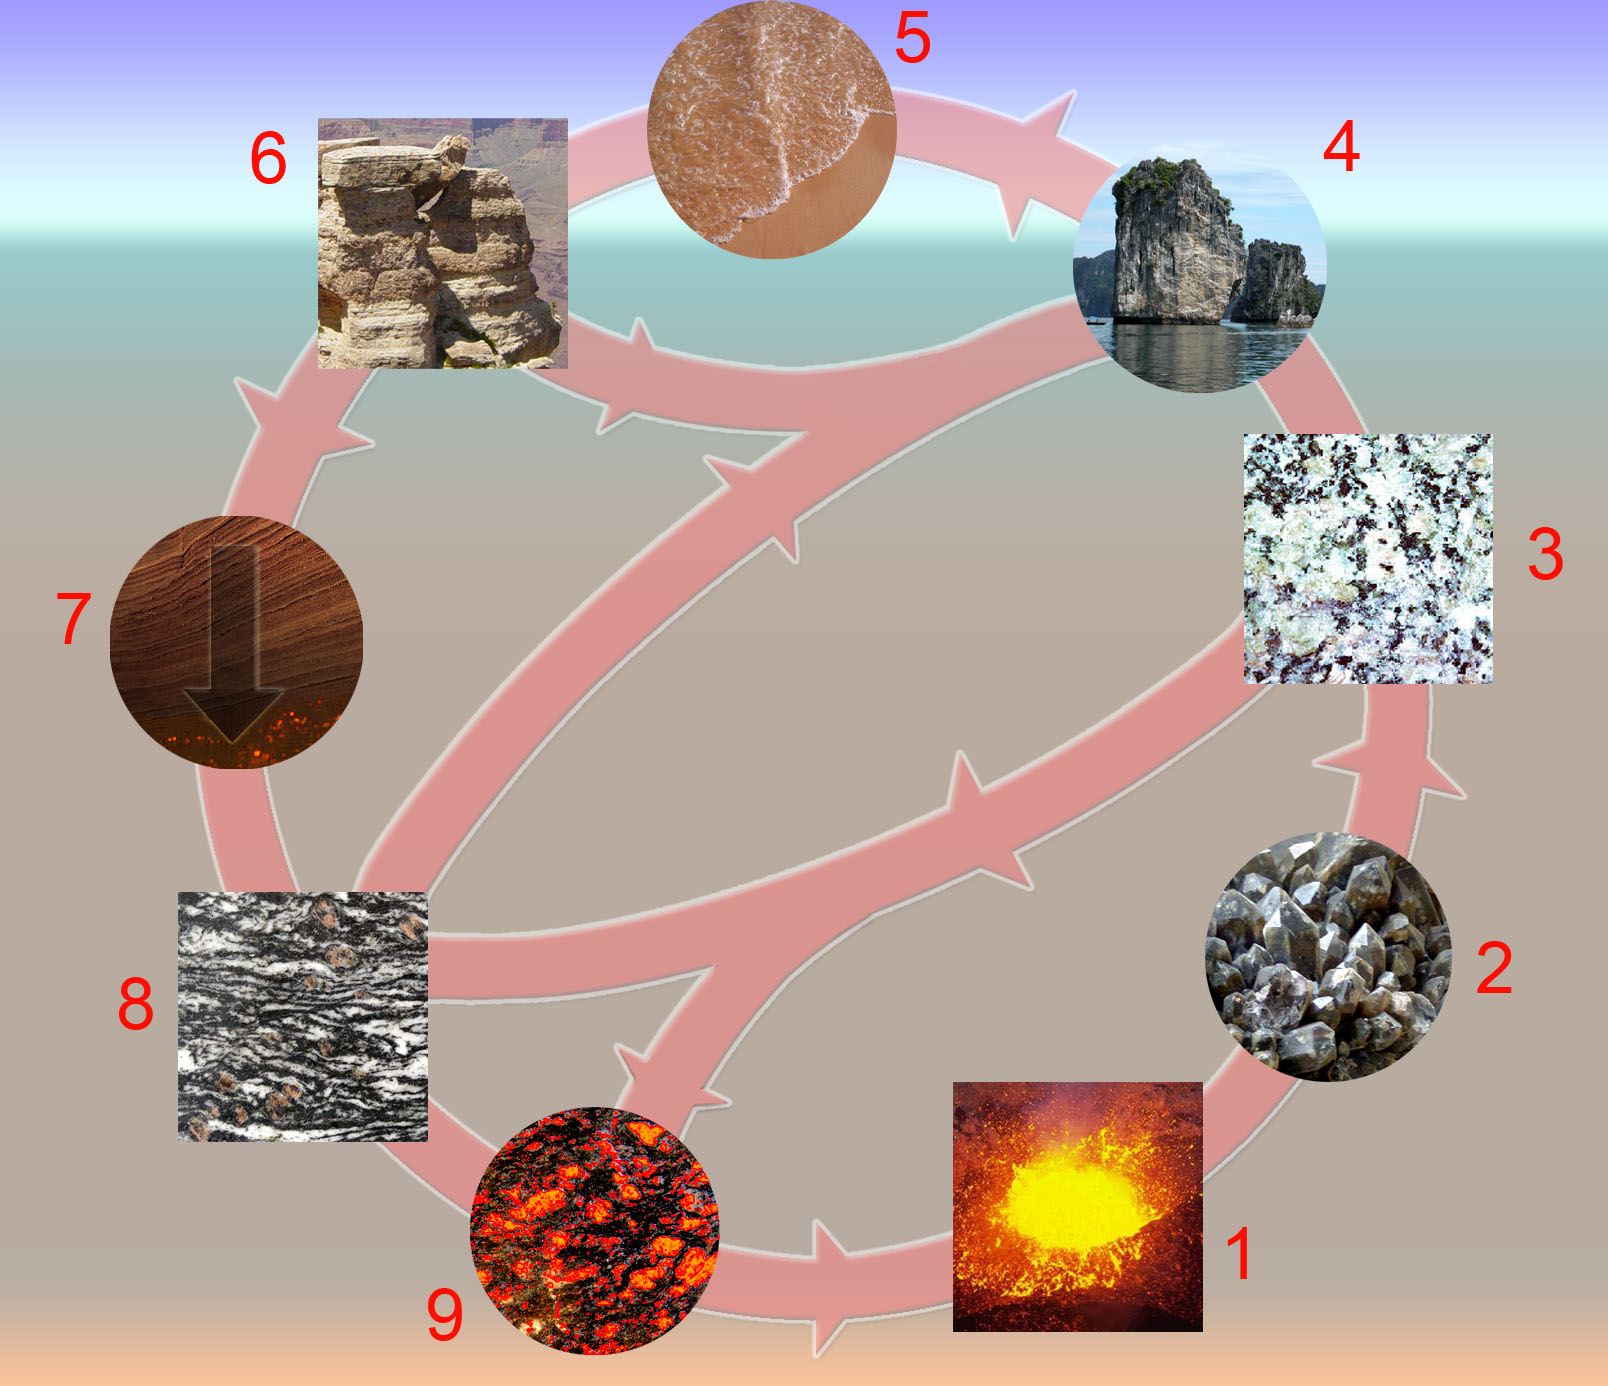 1 = マグマ; 2 = 結晶化; 3 = 火成岩; 4 = 侵食; 5 = 堆積; 6 = 堆積物と堆積岩; 7 = 造構造埋没変成作用; 8 = 変成岩; 9 = 溶融